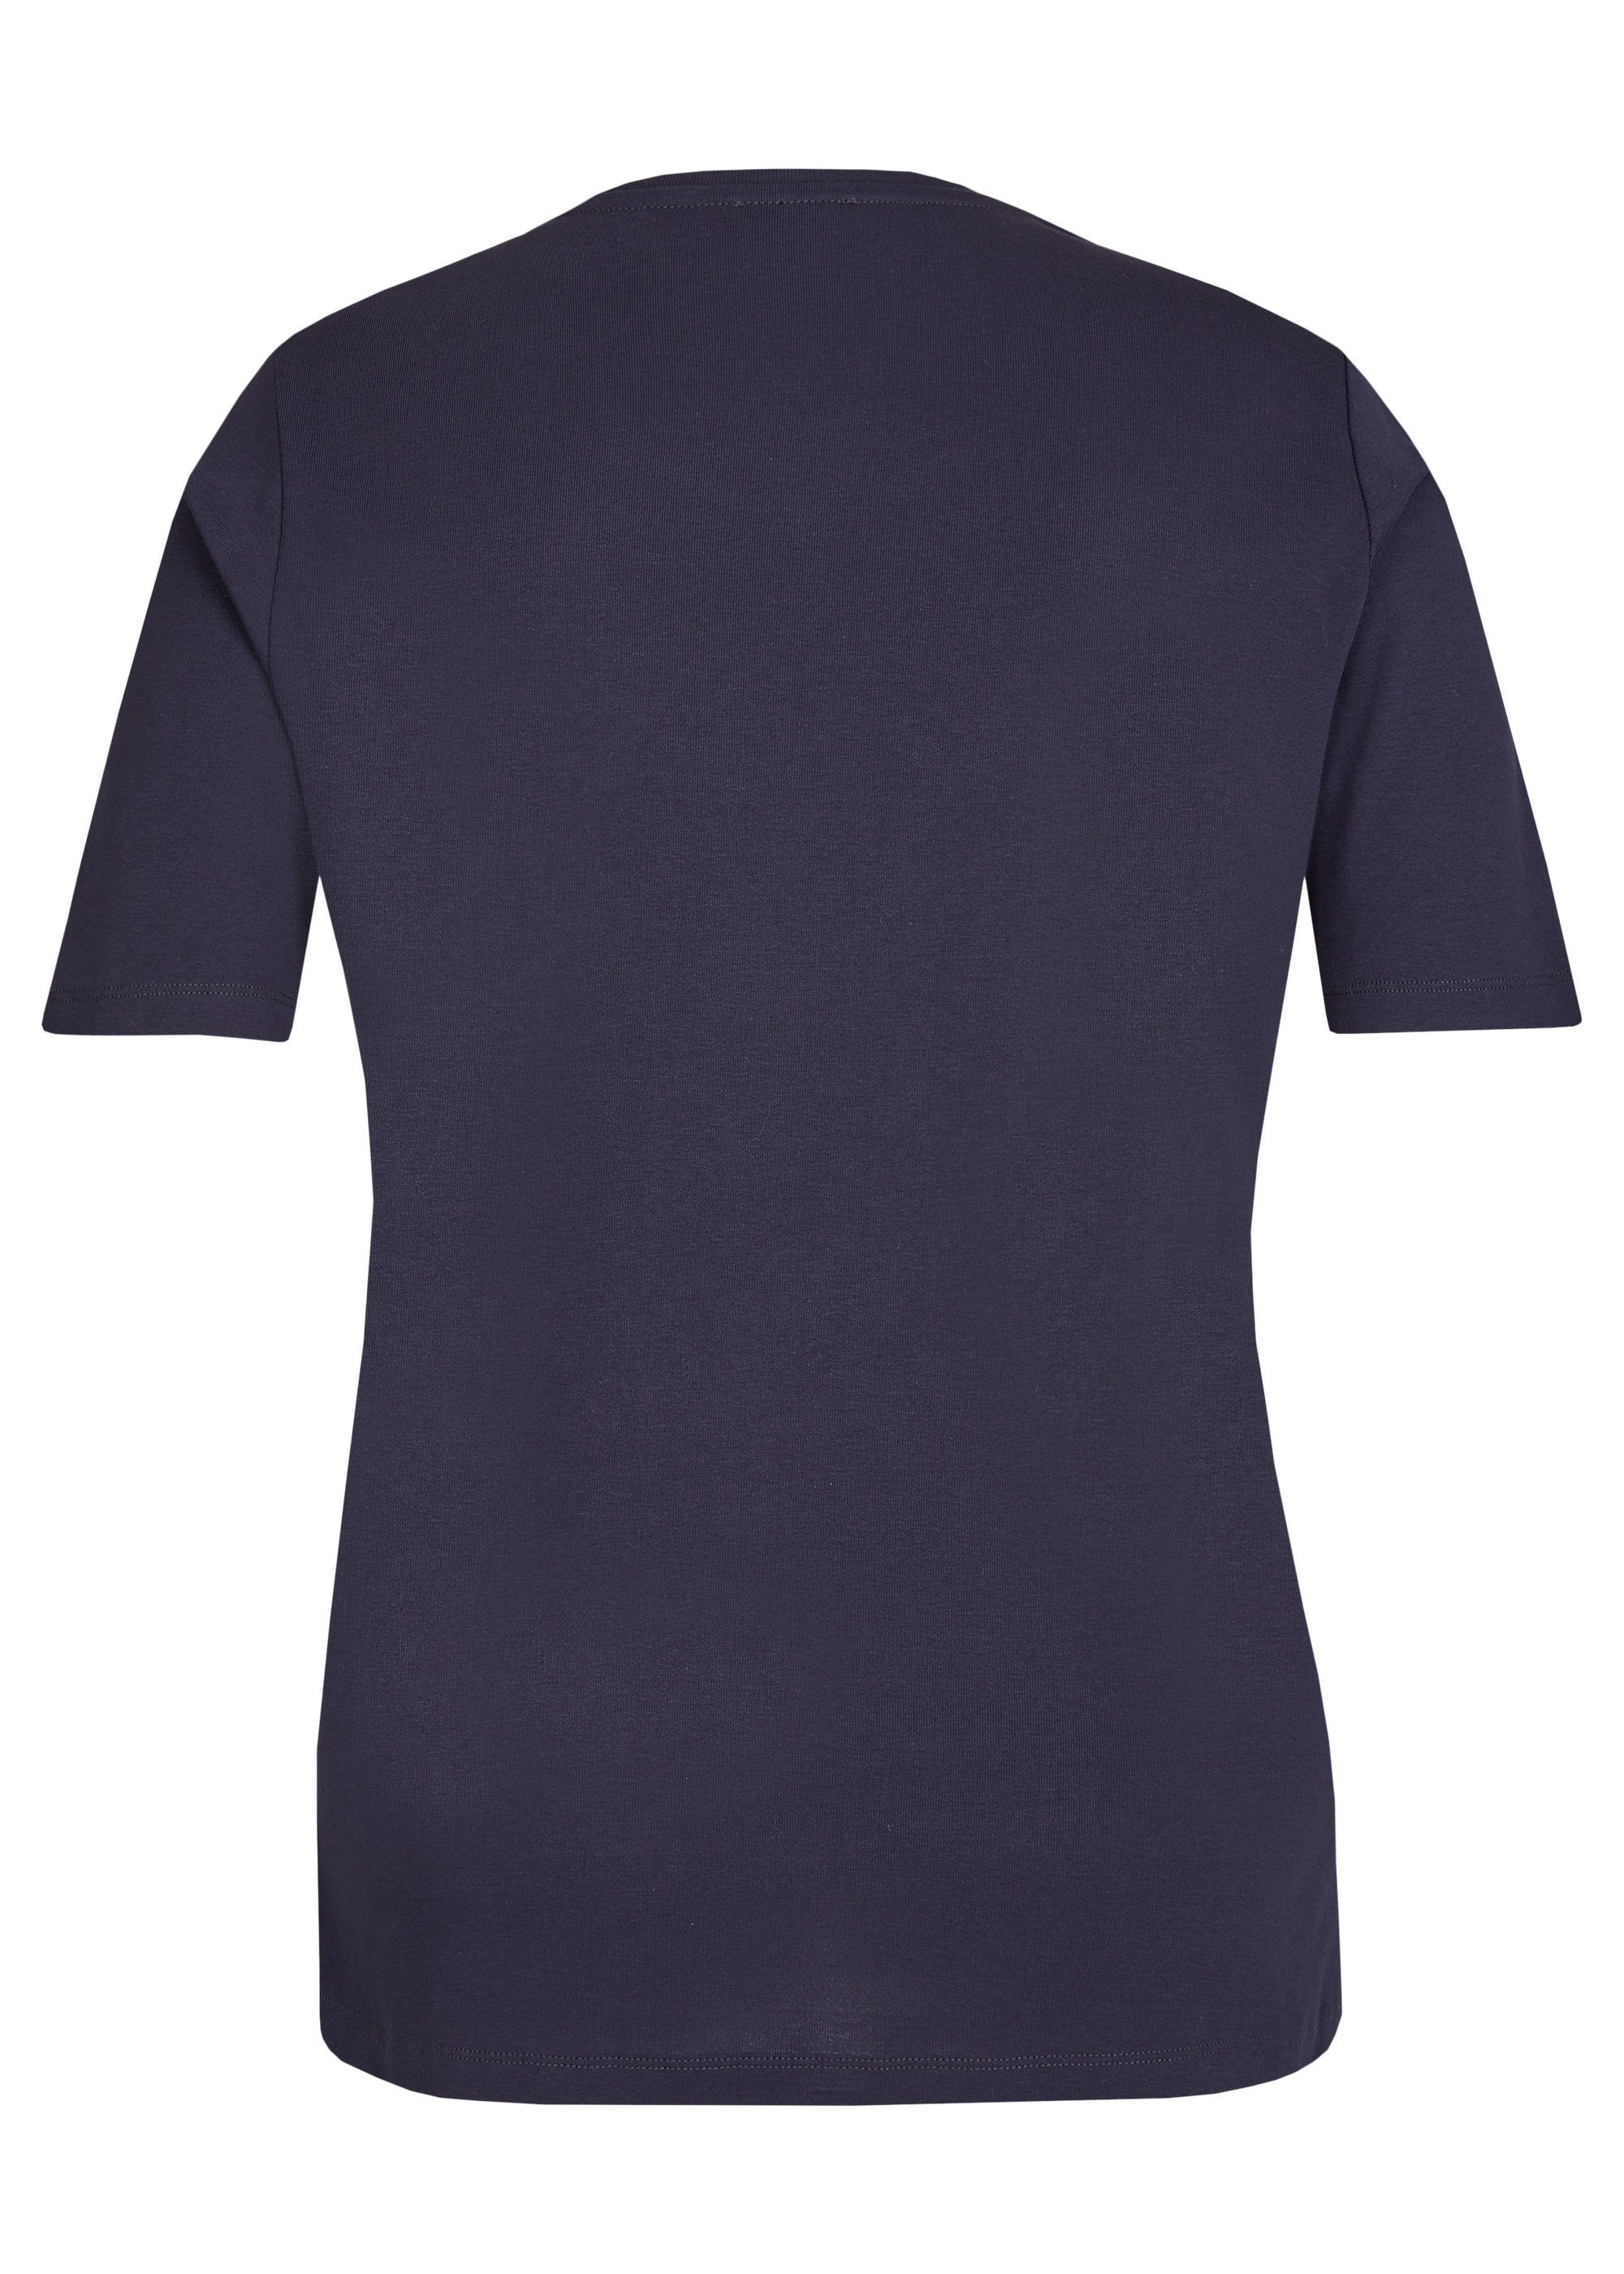 dunkelblau T-Shirt APPIA mit Print-Shirt VIA DUE multicol. Schmucksteinen Zeitloses